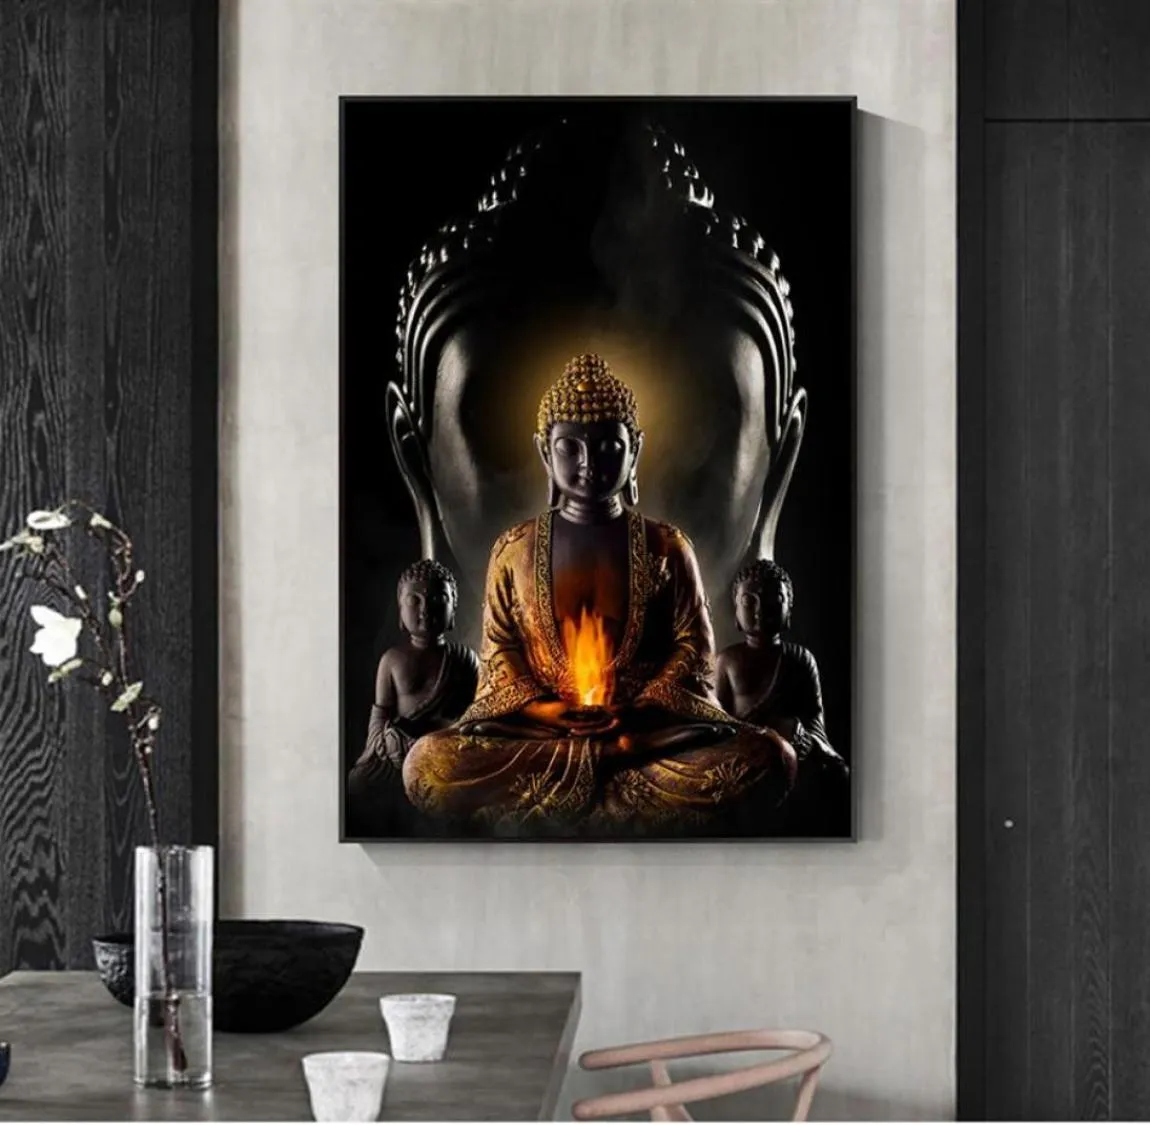 Dipinto su tela Poster e stampe murali Moderni Buddha Immagini di arte della parete per la decorazione del soggiorno Sala da pranzo Ingresso el Home Dec247T7816415